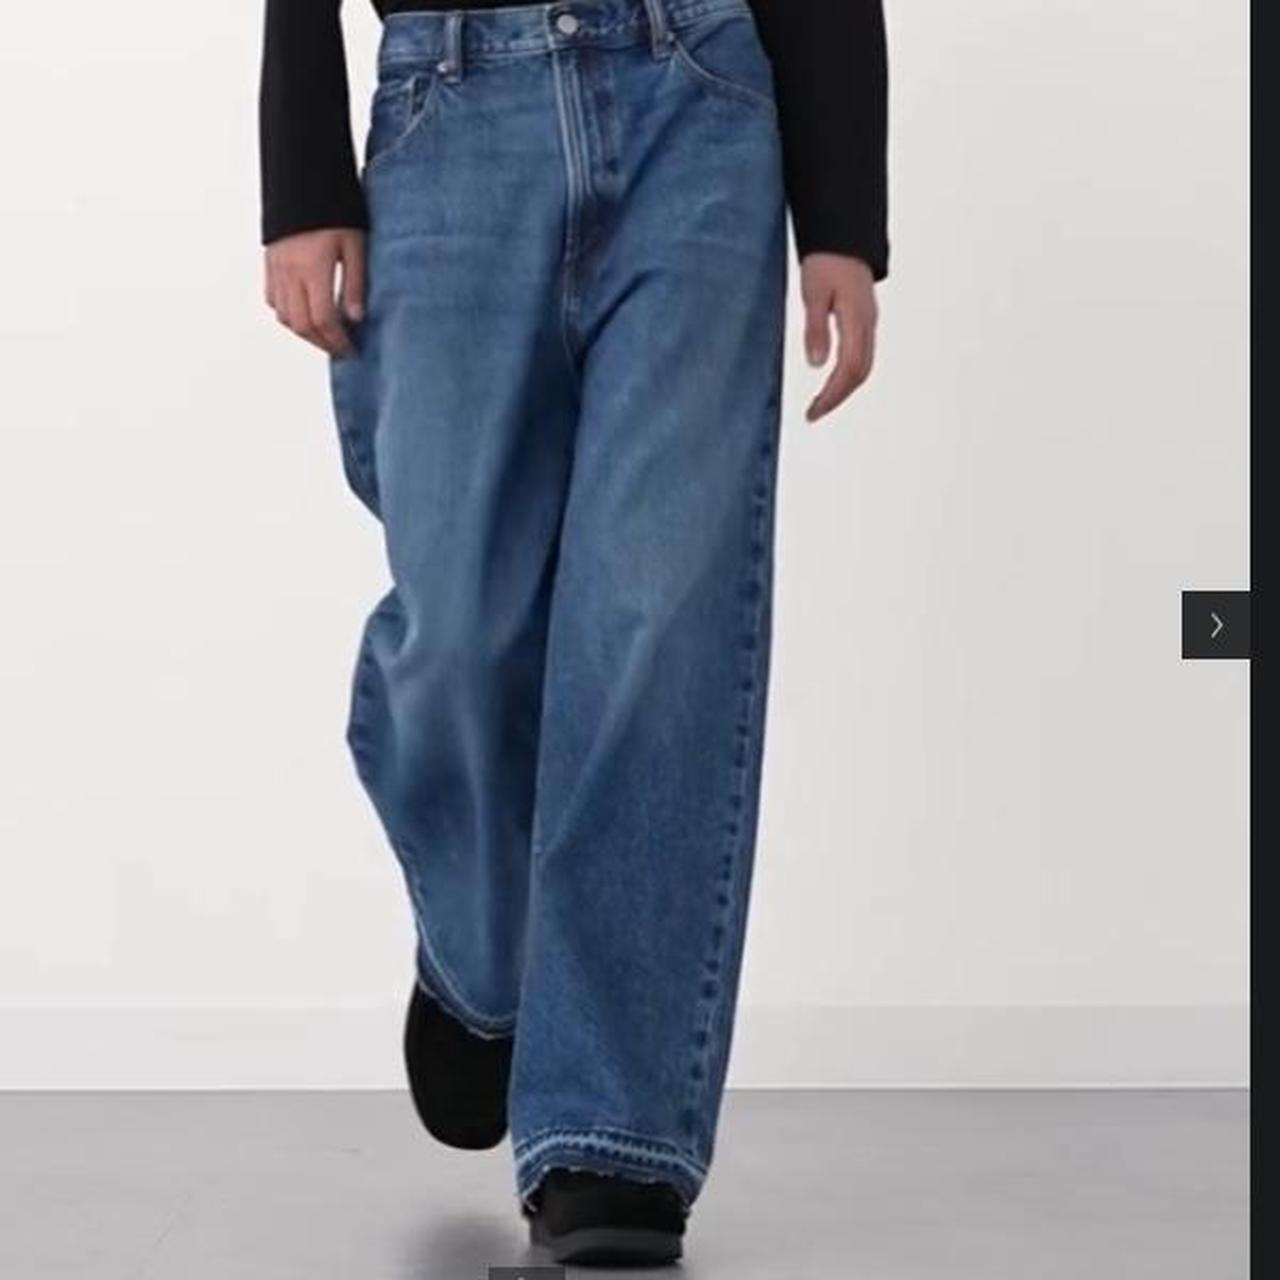 G U japanese brand blue super baggy jeans size 32... - Depop